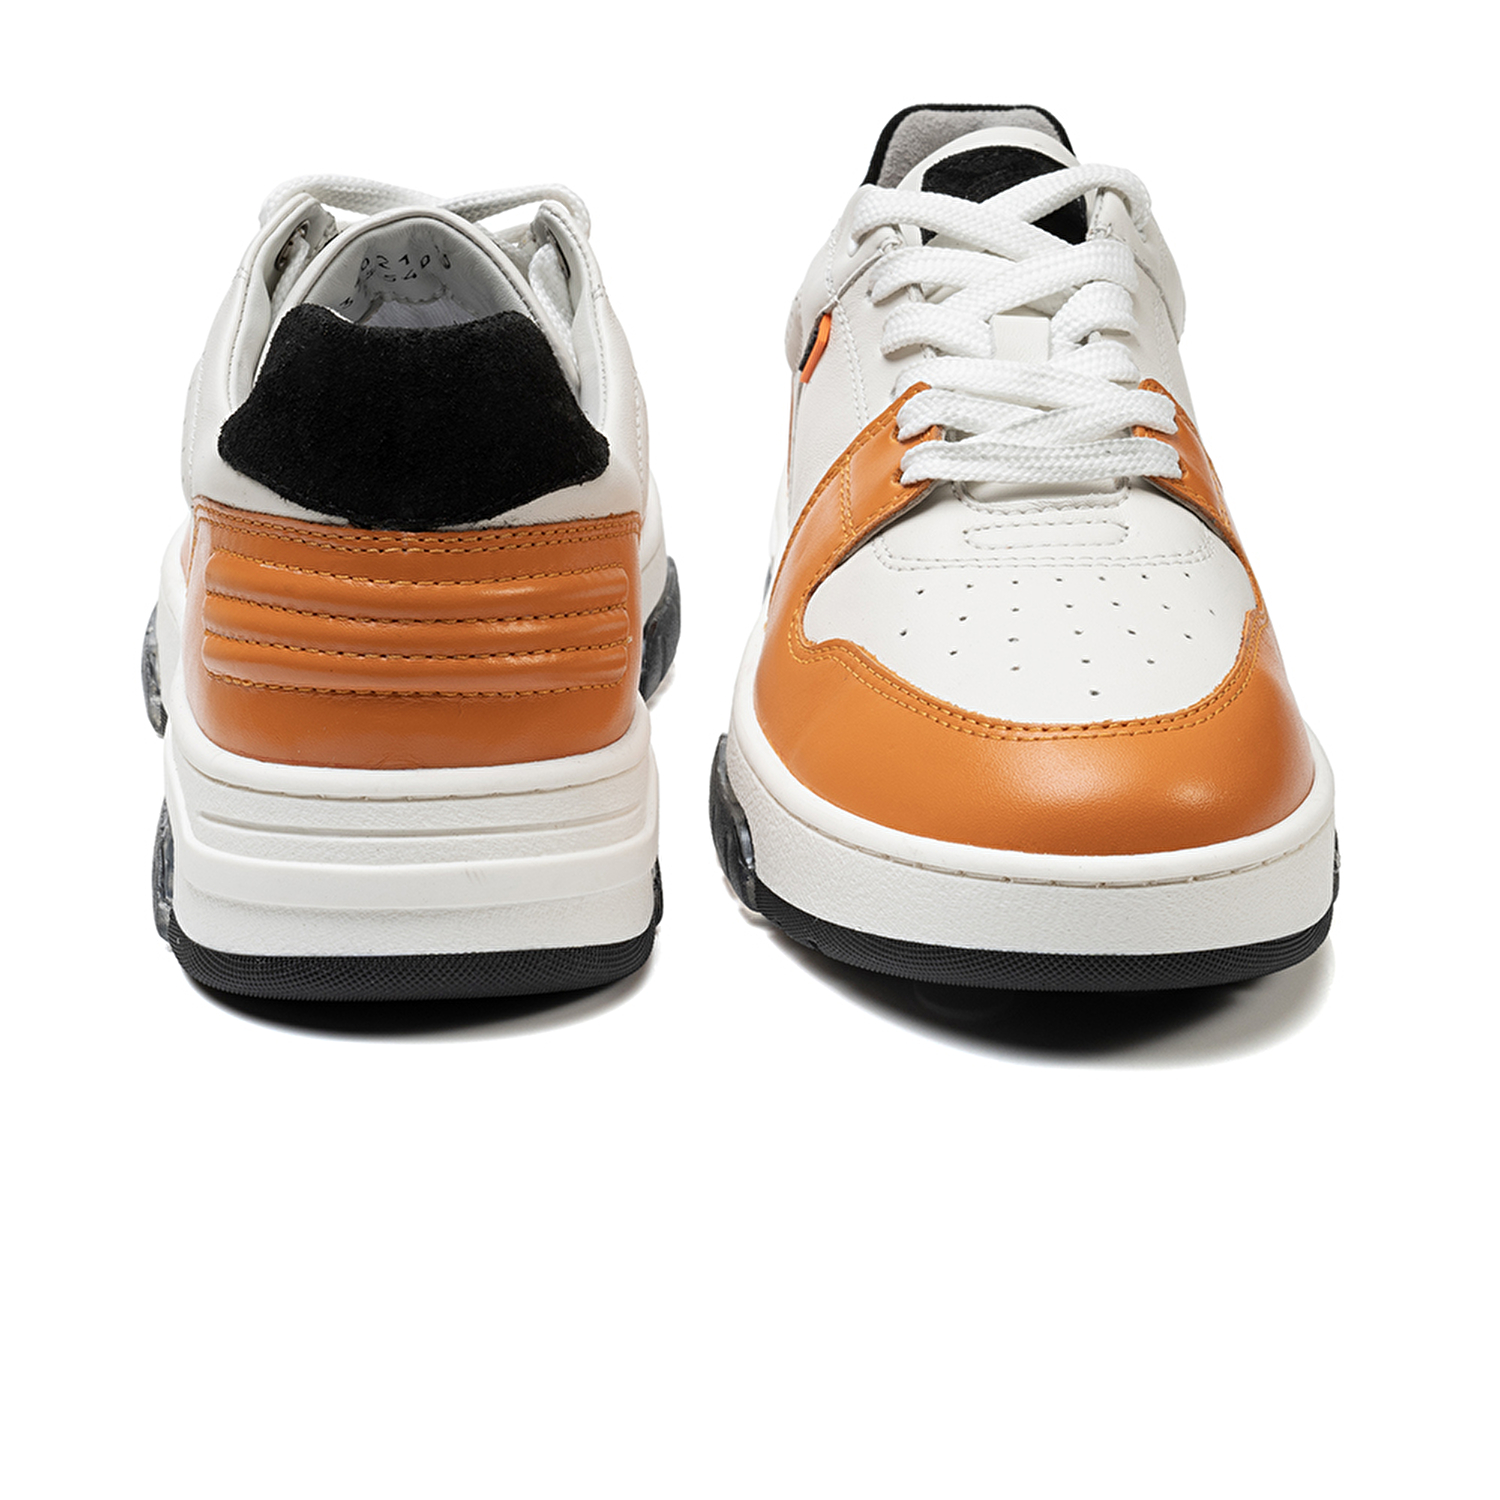 Kadın Beyaz Turuncu Hakiki Deri Sneaker Ayakkabı 3K2SA33021-7